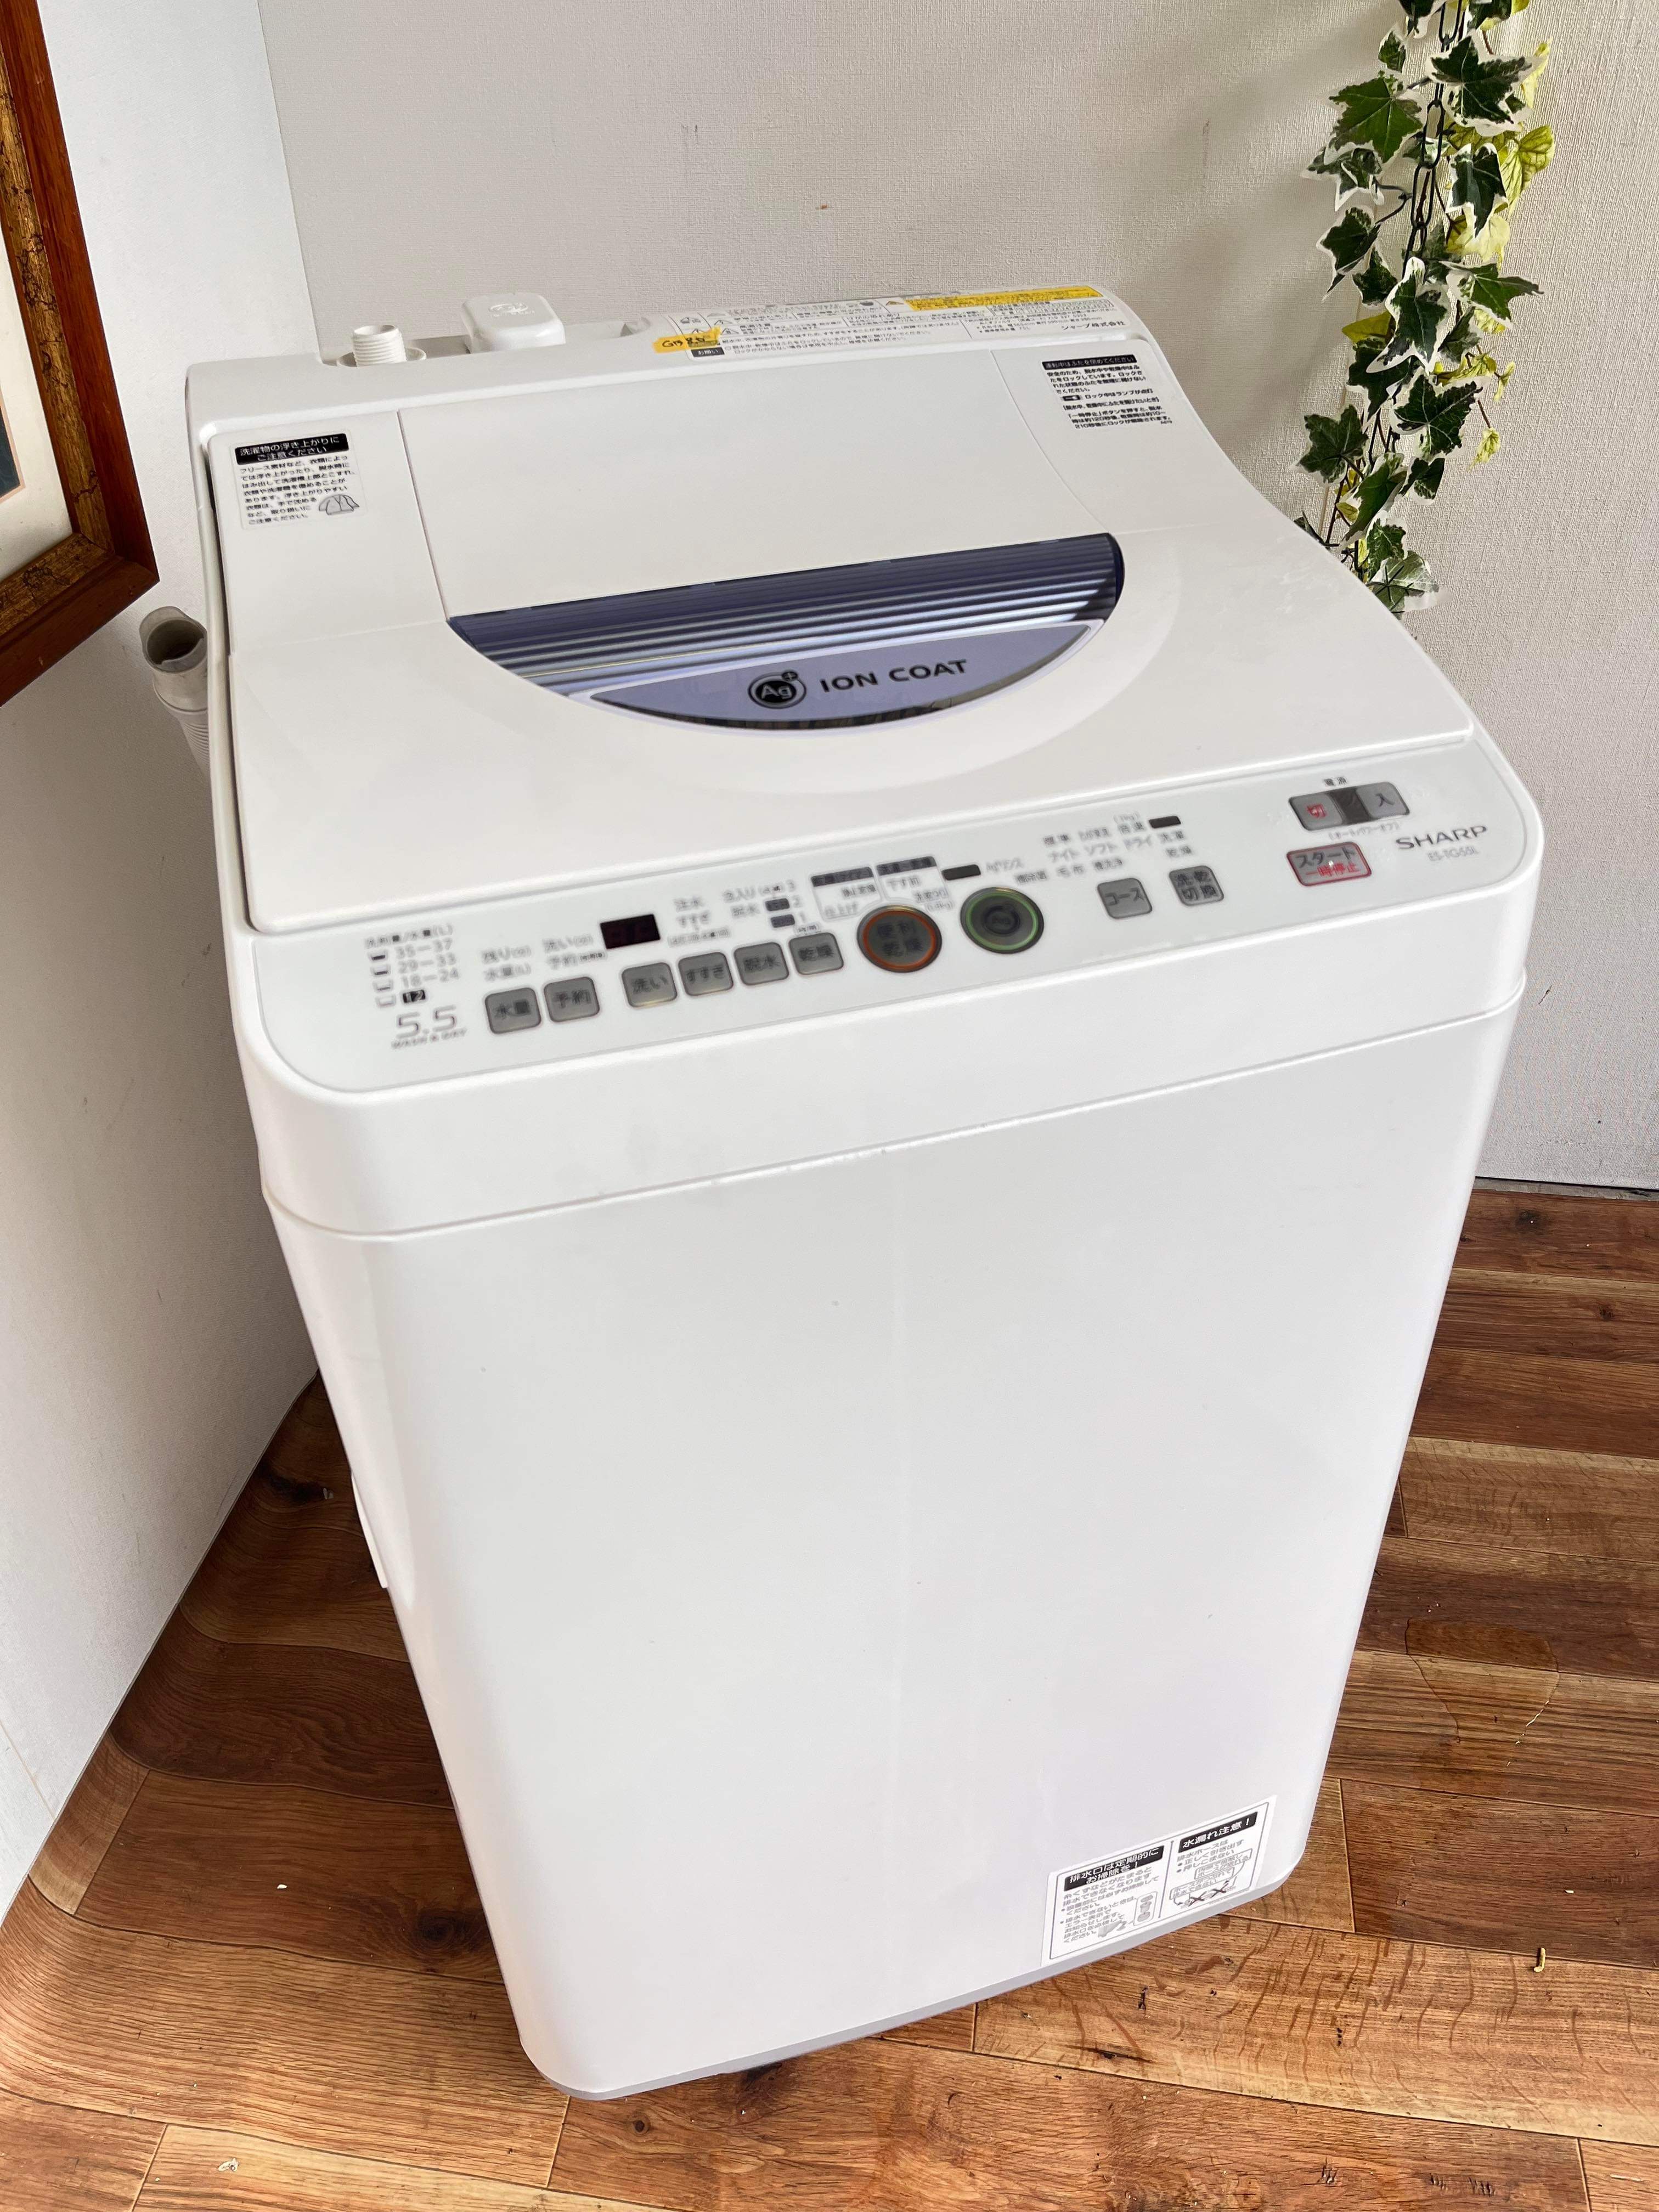 2012年製 5.5kg 洗濯乾燥機 SHARP ES-TG55L | 中村区亀島リサイクル 